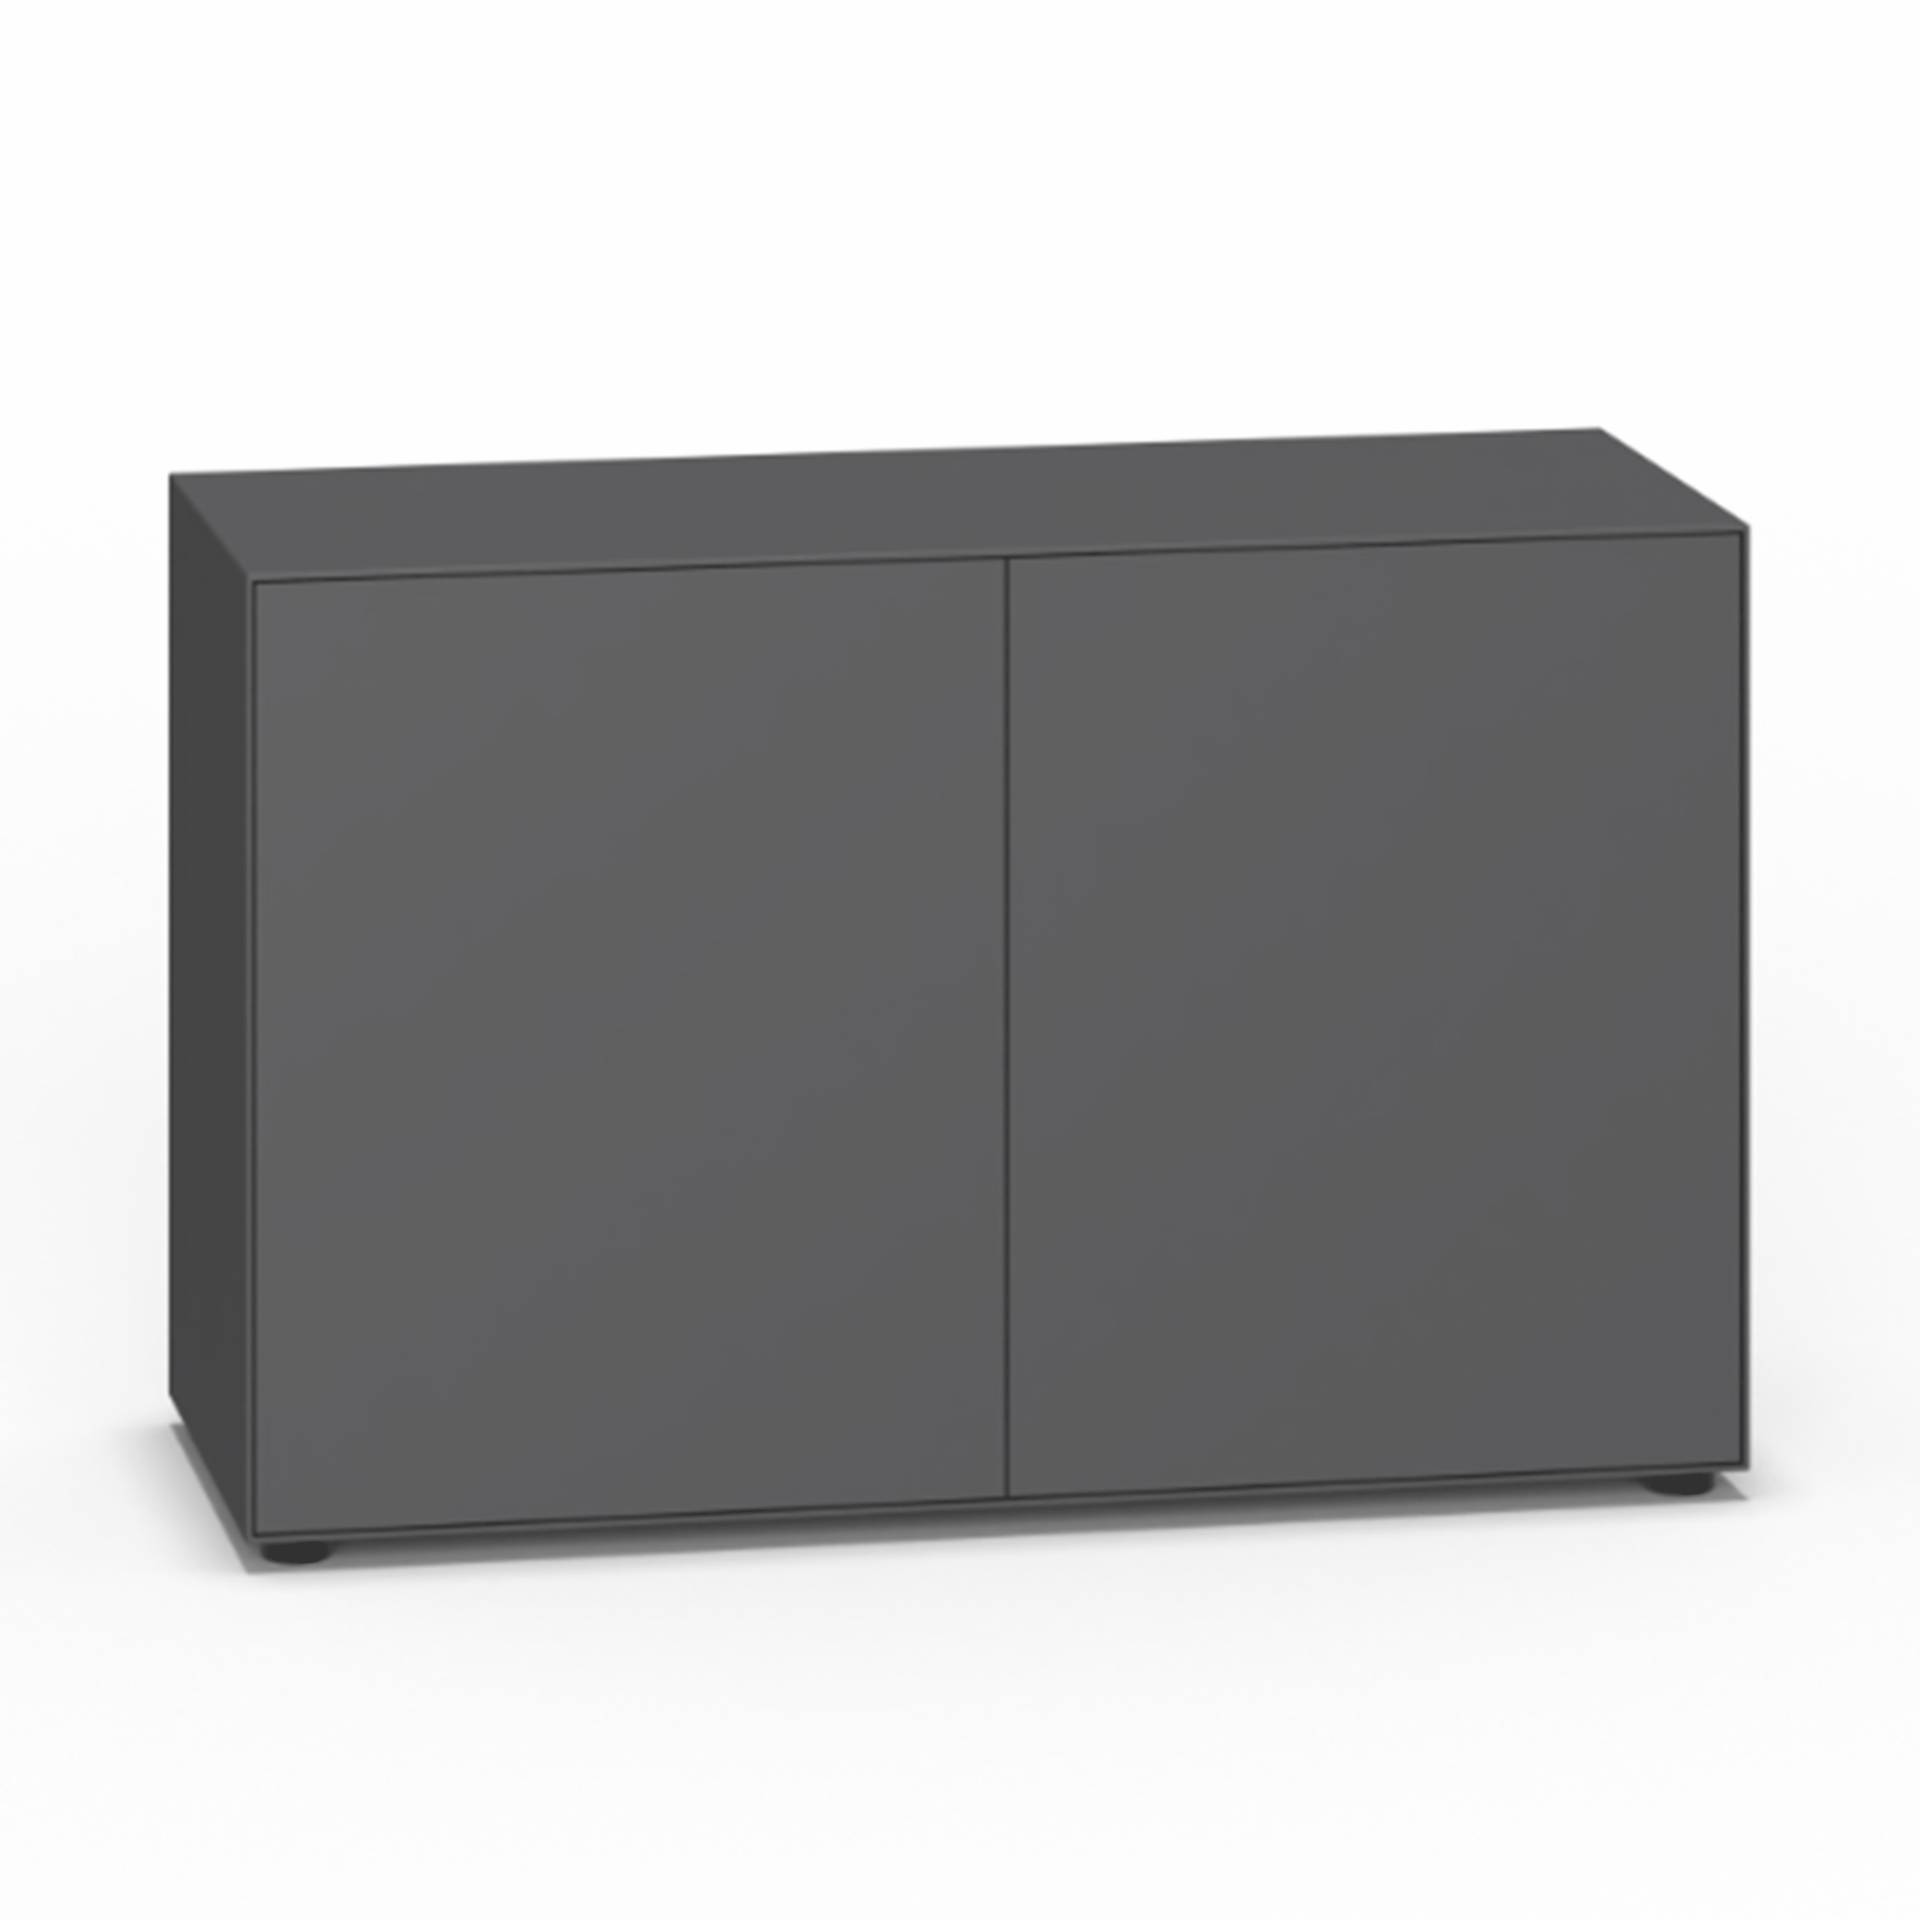 Piure - Nex Pur Box Türbox 120x77.5x48cm - graphit/MDF matt lackiert/mit Gleitfüße/1 Fachboden/inkl. Verstärkungsschiene, einstellbar 2 cm von Piure